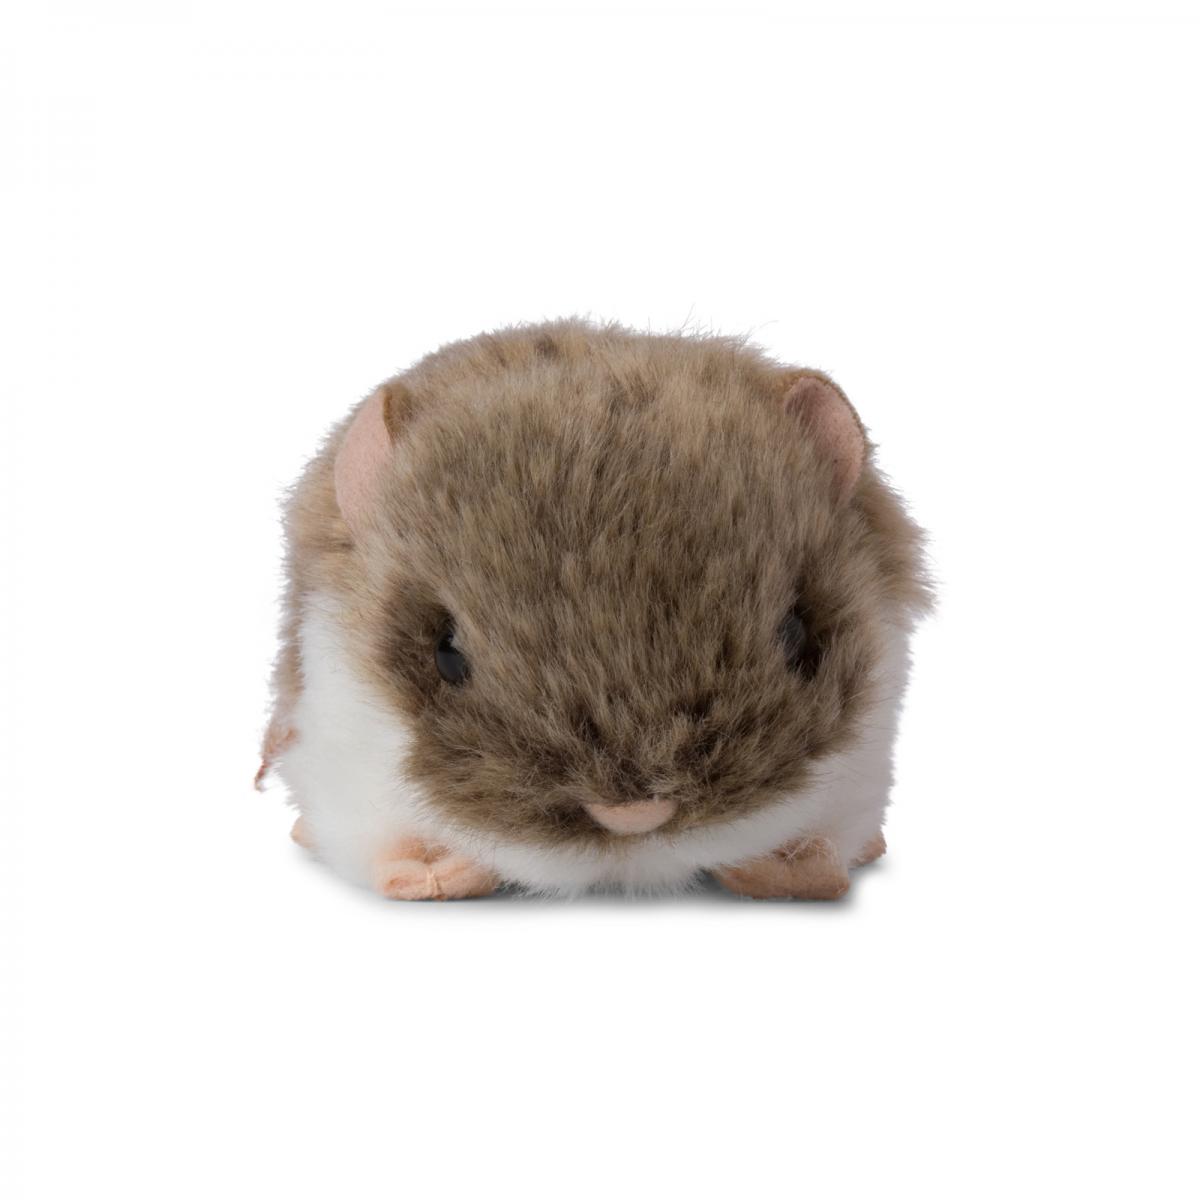 Hamster - WWF (Vrldsnaturfonden)